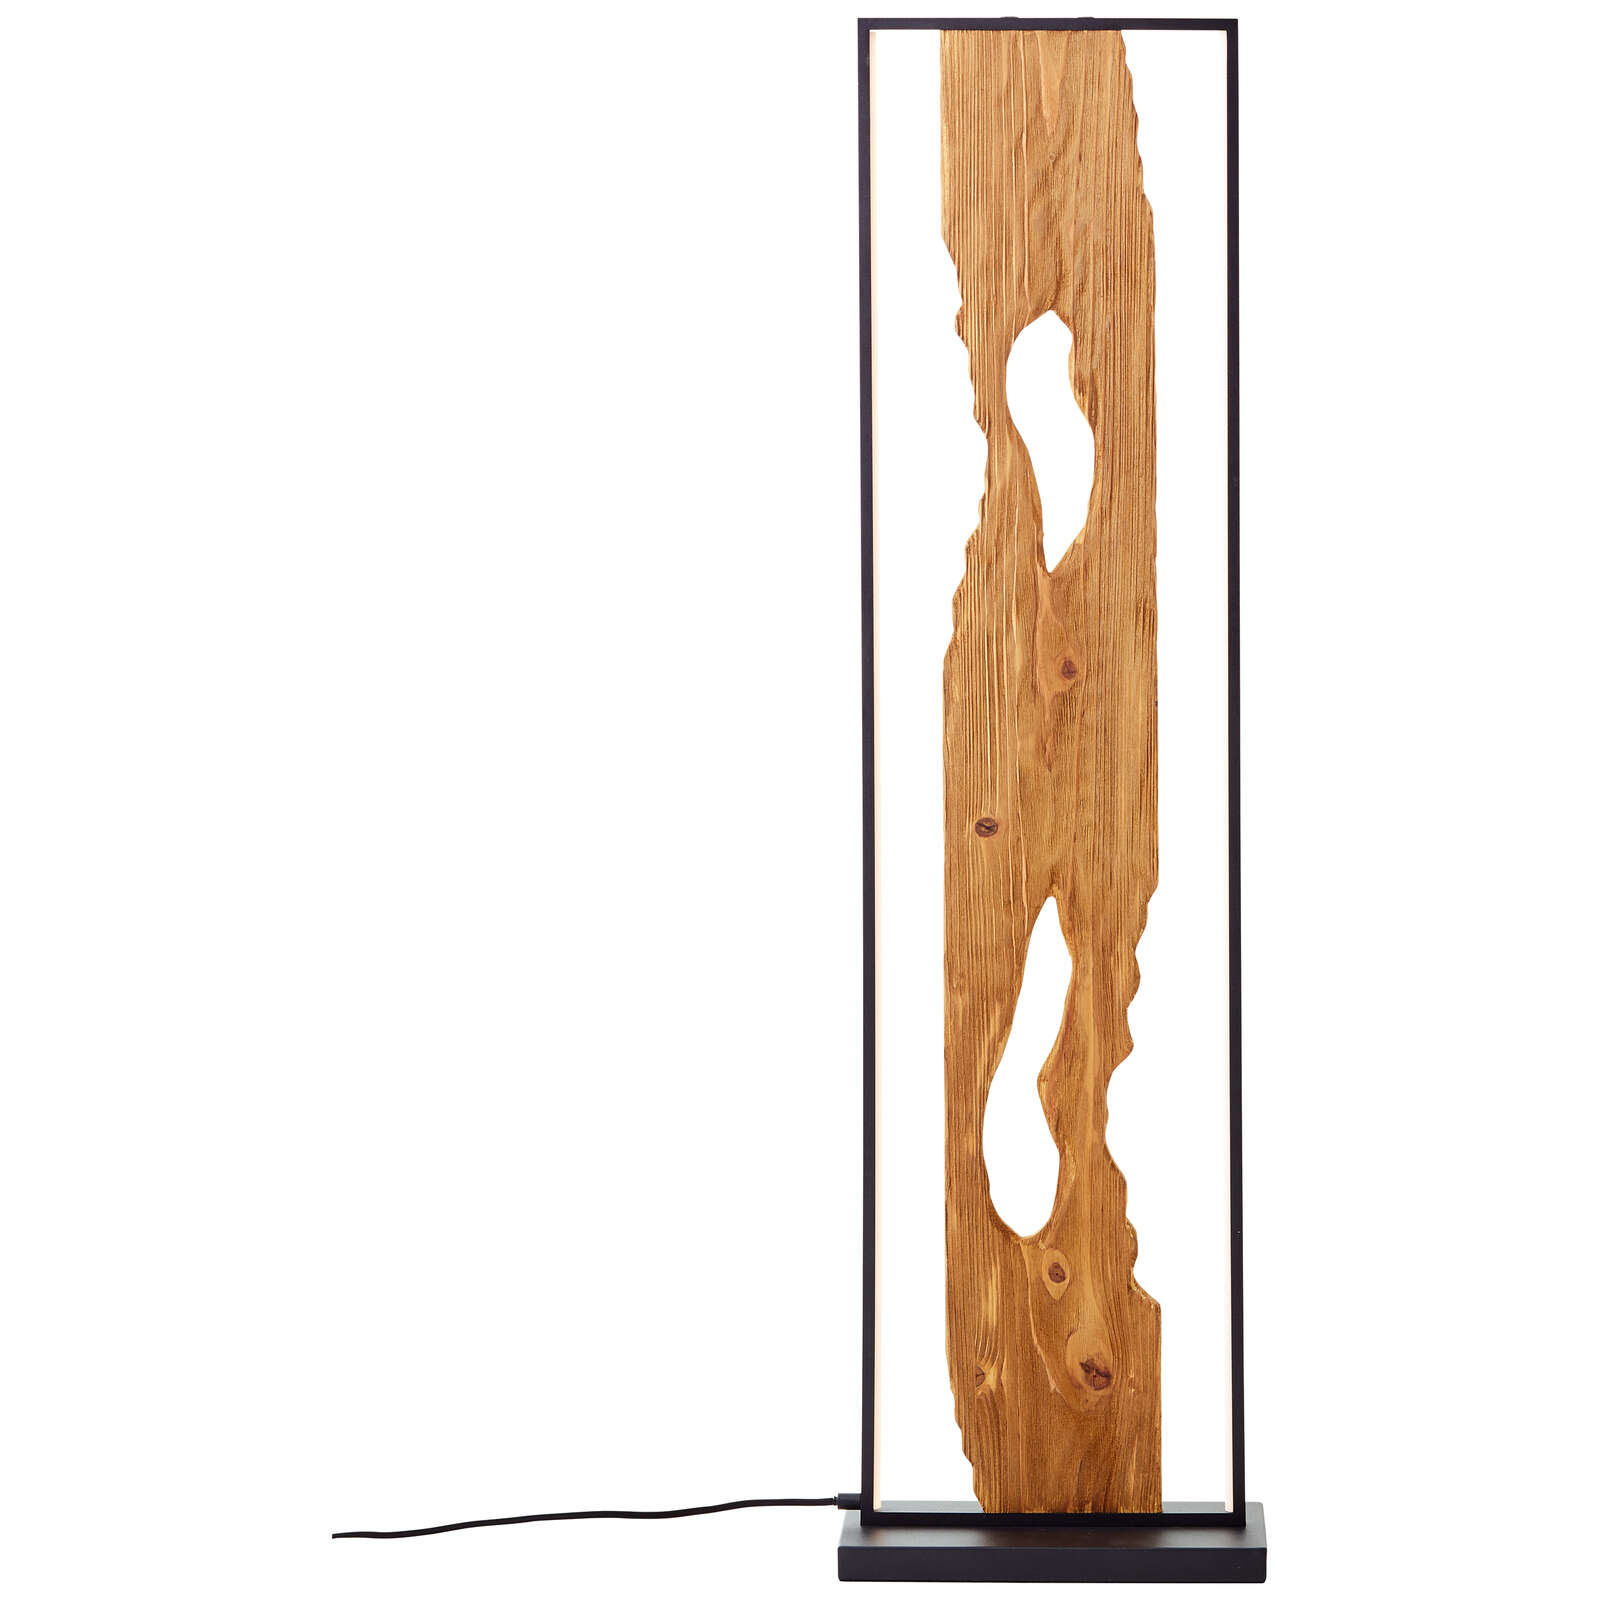             Lámpara de pie de madera - Elea 7 - Marrón
        